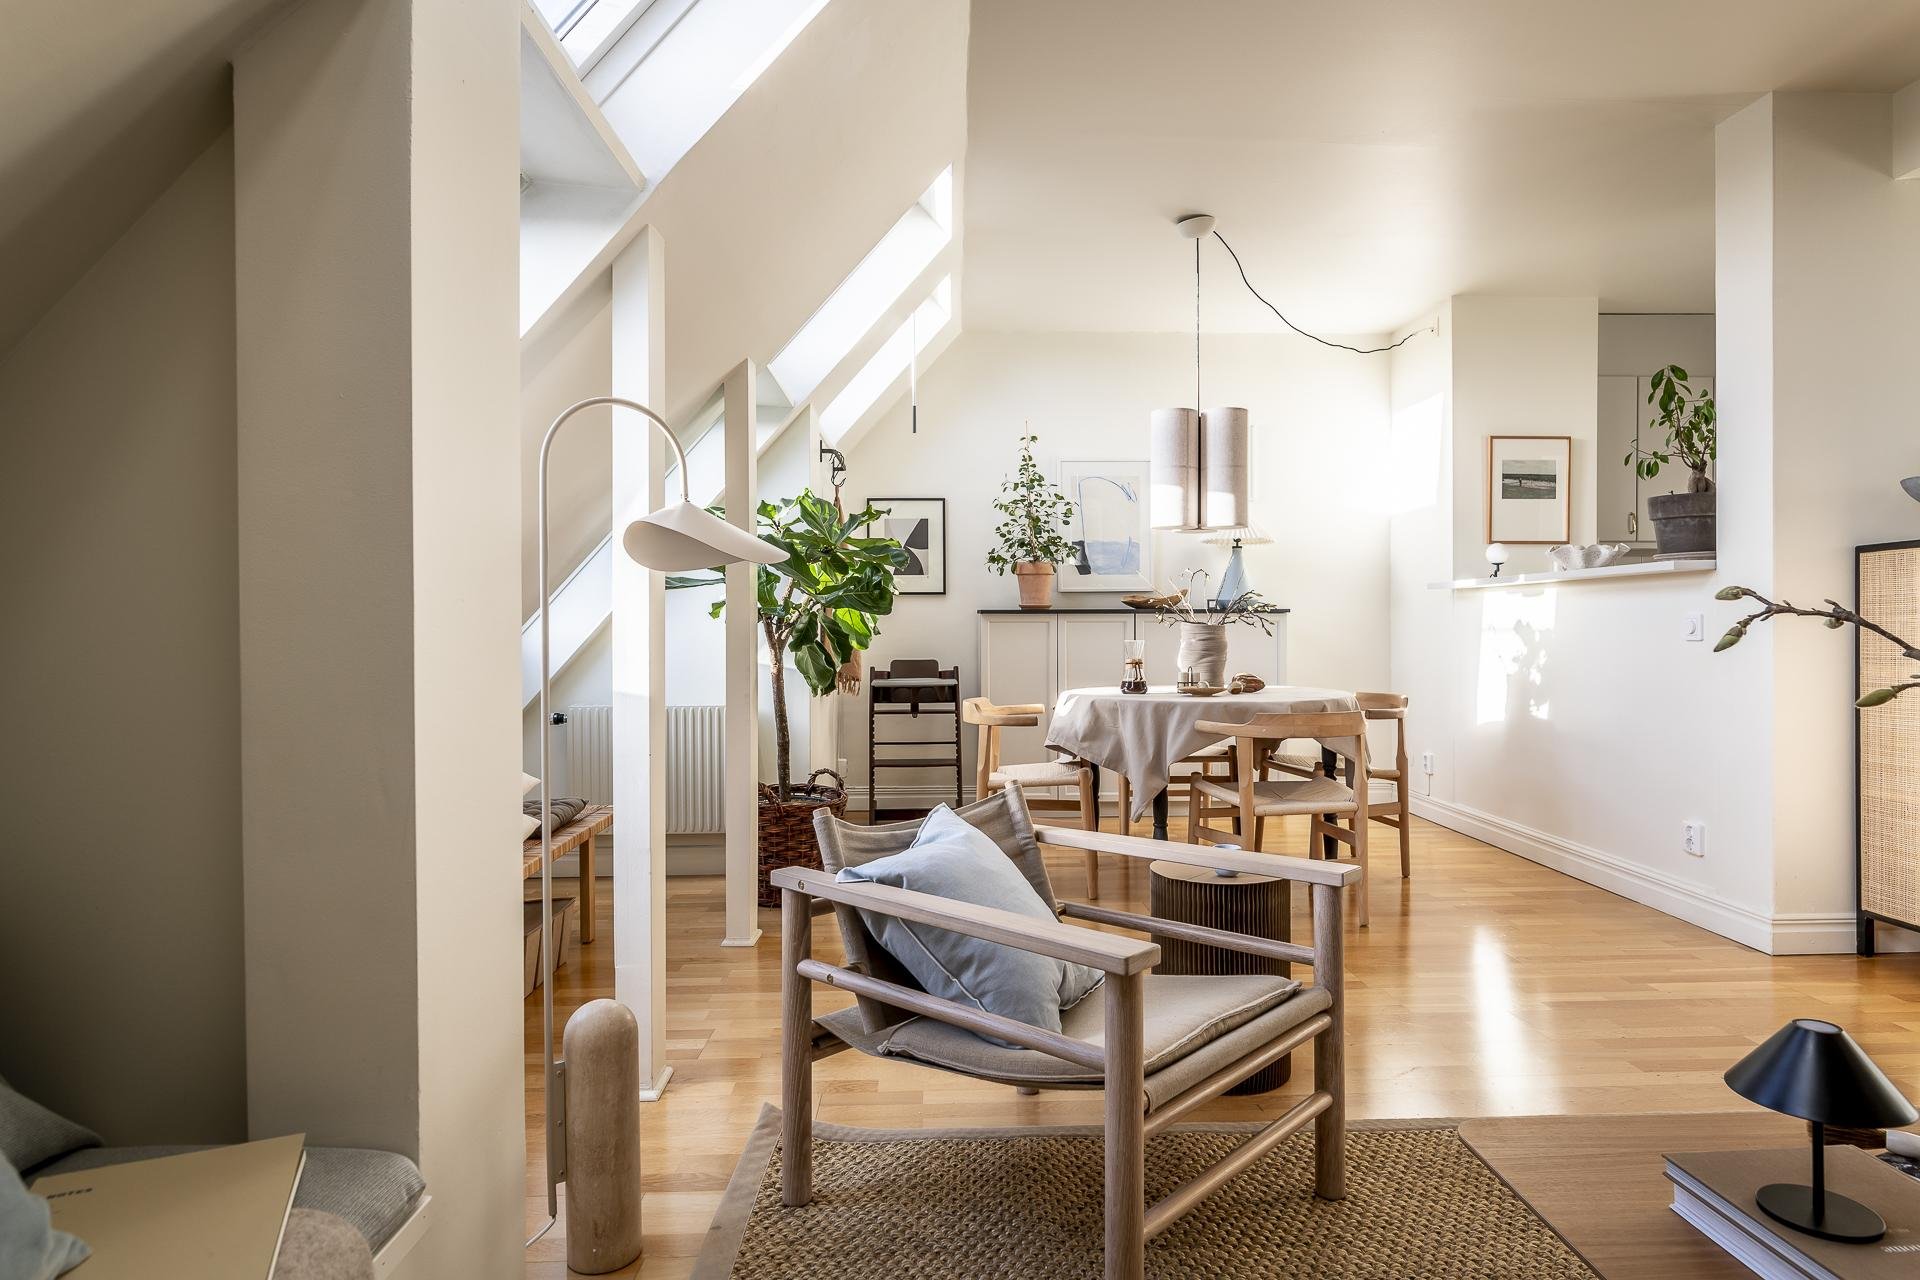 arredamento scandinavo moderno - chiccacasa - soggiorno open space stile nordico moderno